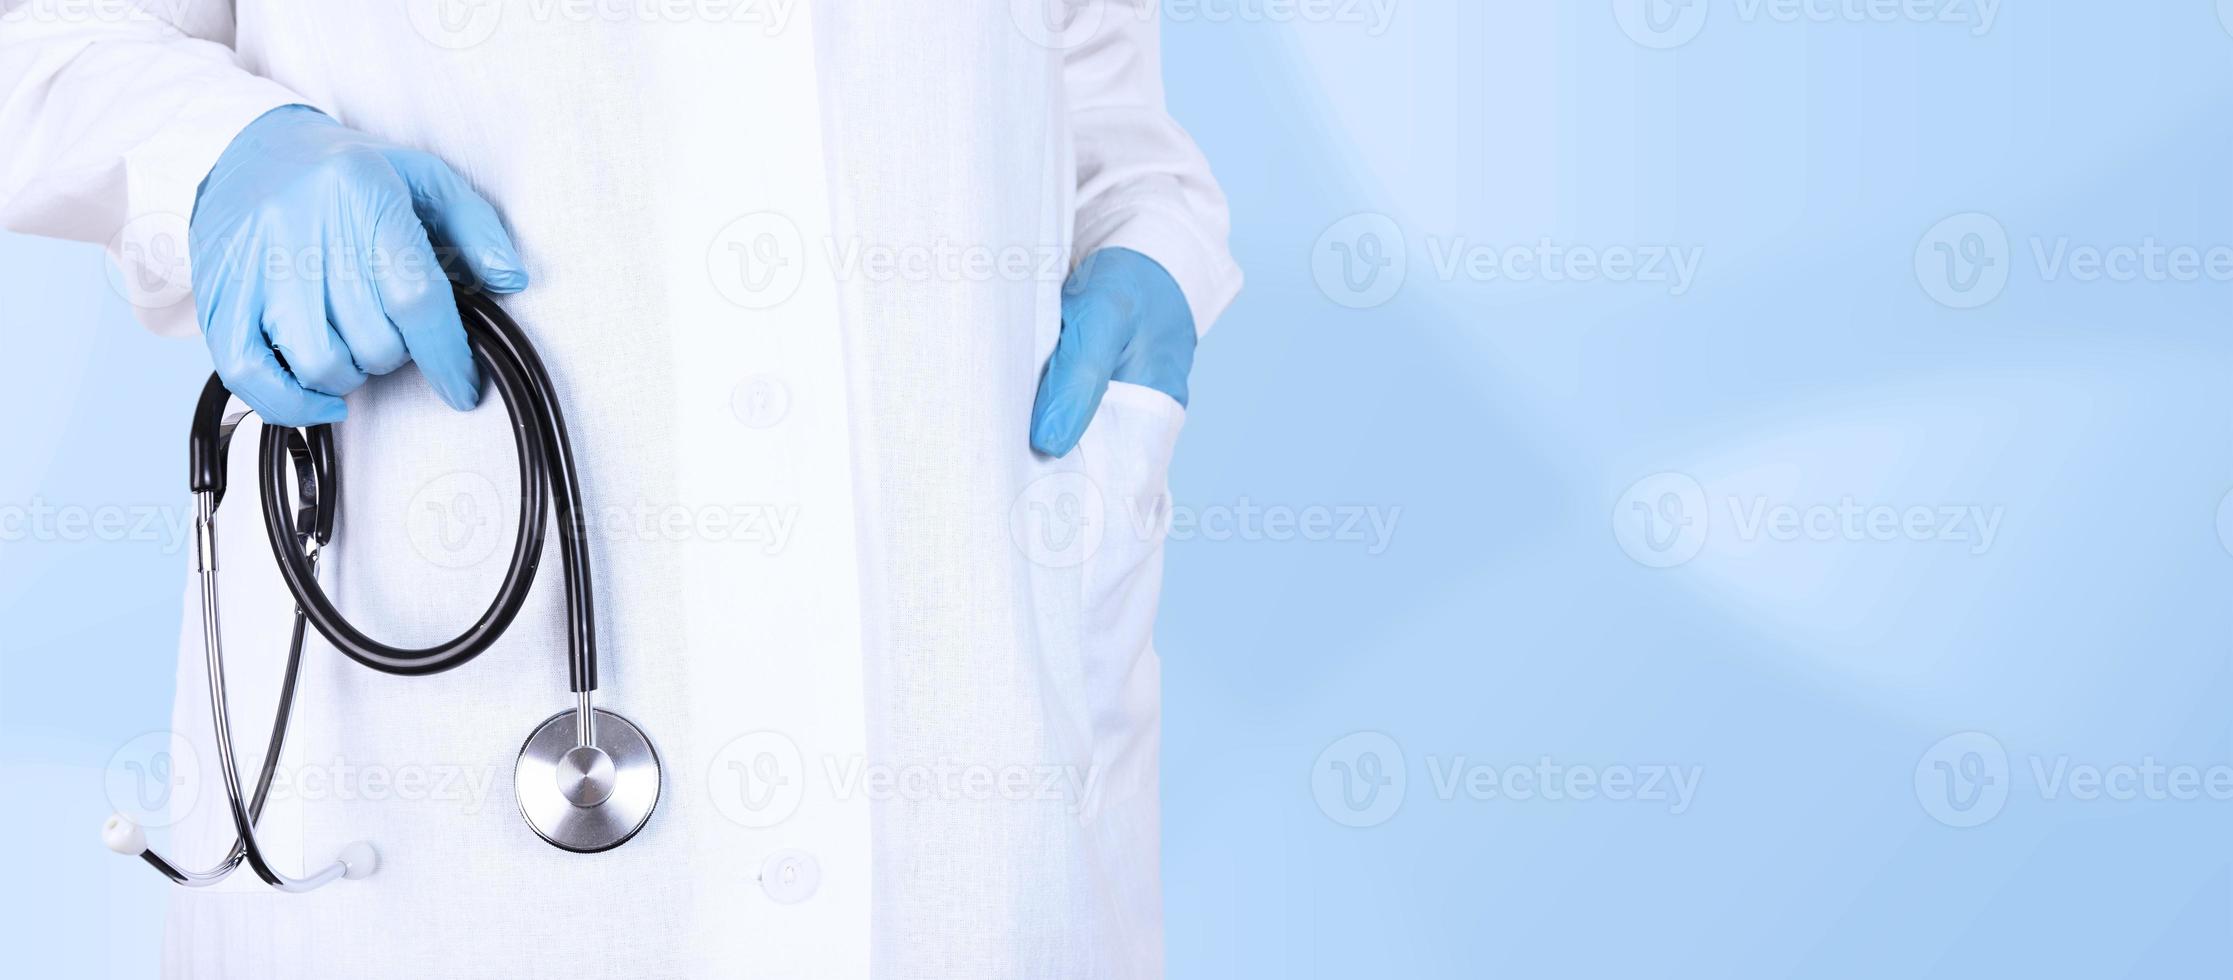 médico idoso profissional ou cardiologista de uniforme branco, segurando um estetoscópio na mão. clínica médica de cardiologia, conceito de tratamento cardíaco. close-up vista, copie o espaço. foto